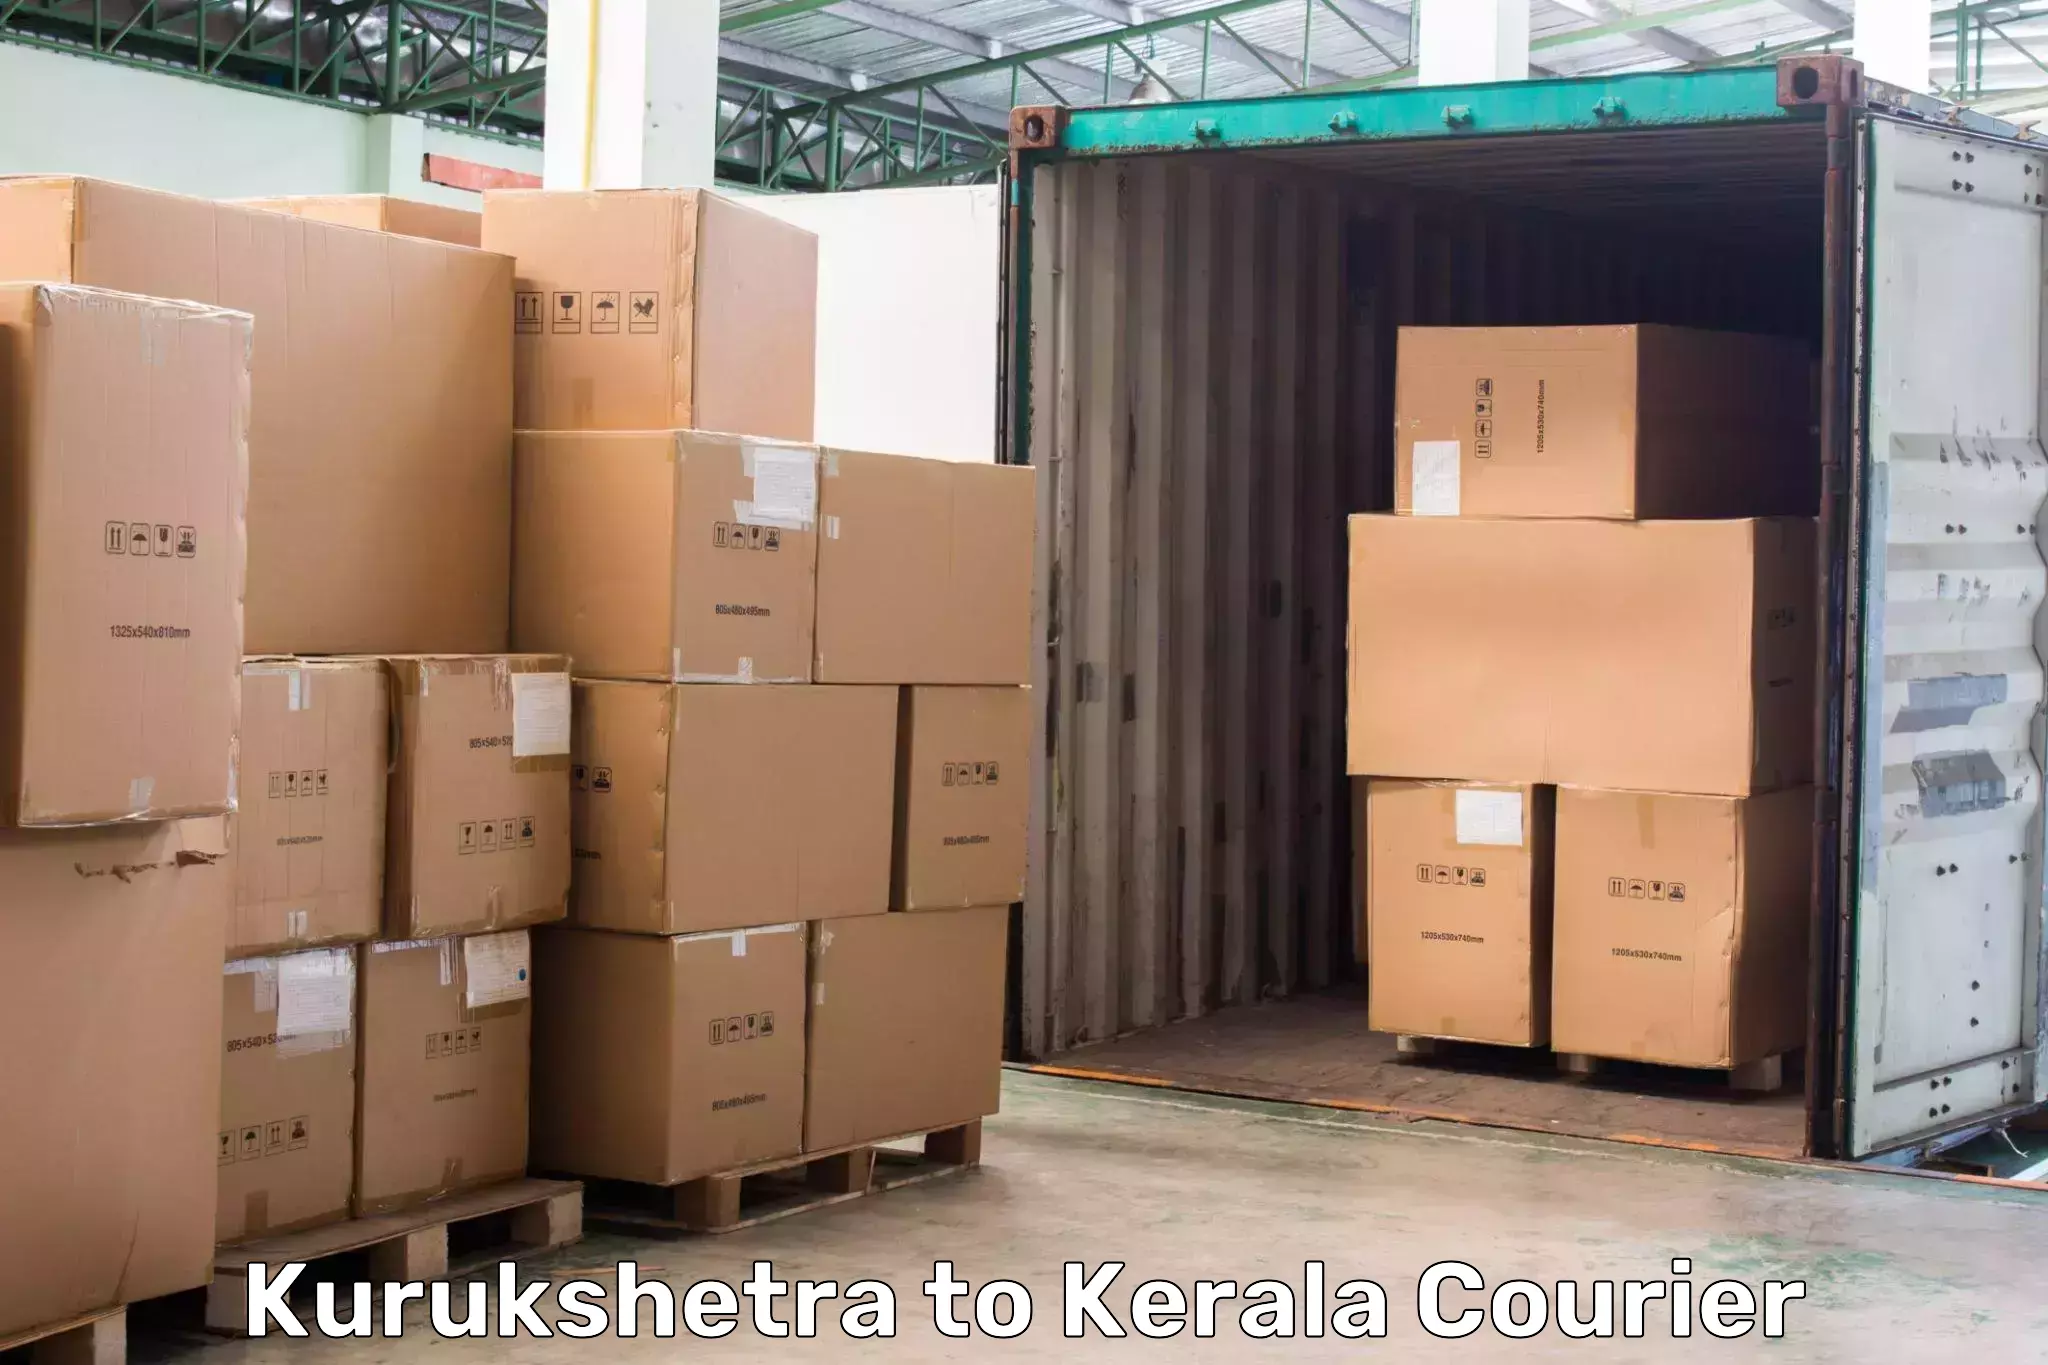 Nationwide delivery network Kurukshetra to Cherpulassery